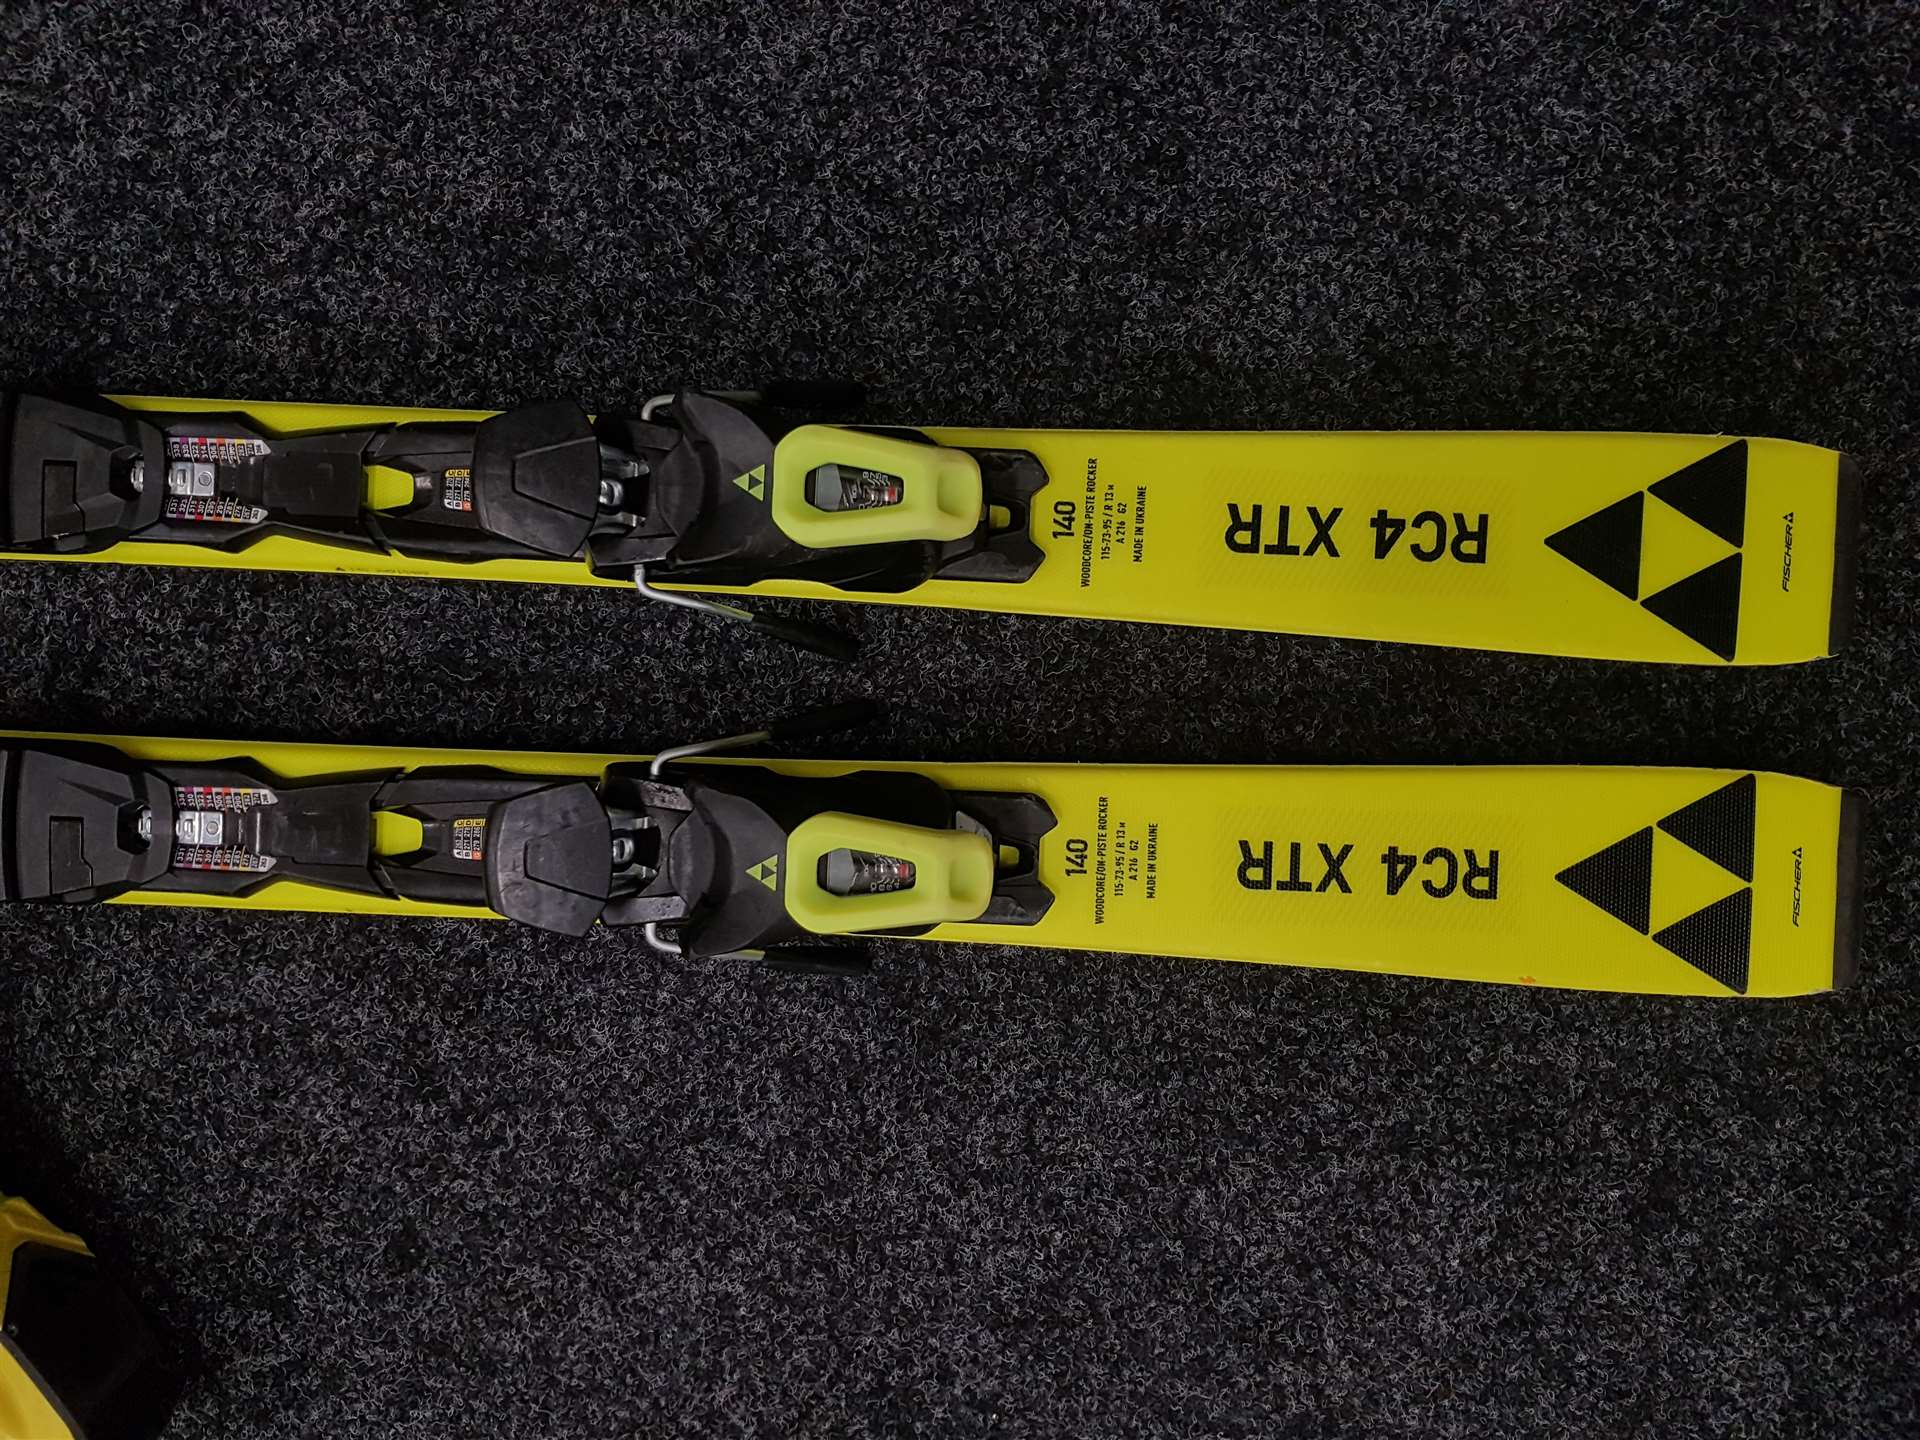 Bazárové lyže FISCHER RC4 XTR + lyžařské boty SALOMON XMAX 80